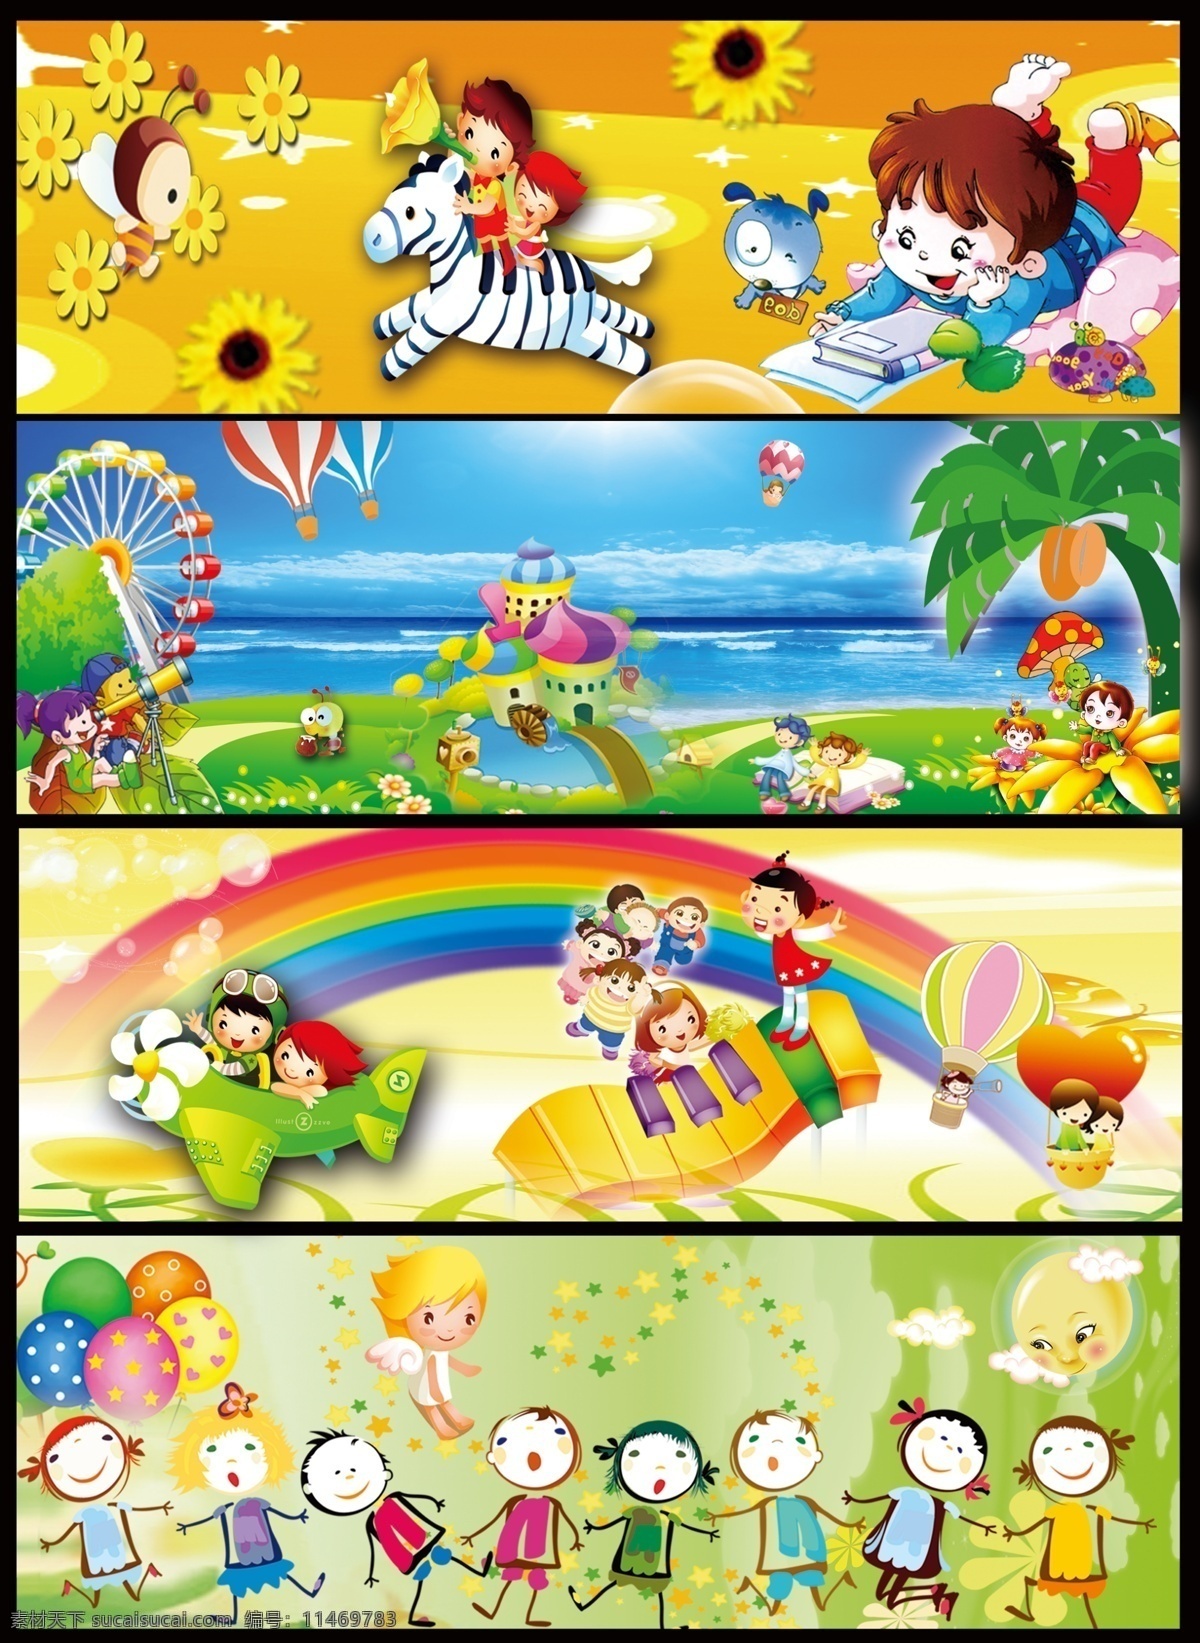 幼儿园 墙体 幼儿园广告 展板模板 墙体广告 卡通斑马 卡通画 热气球 海洋 椰子树 风车 望远镜 飞机 快乐小孩 彩虹 psd素材 分层素材 红色